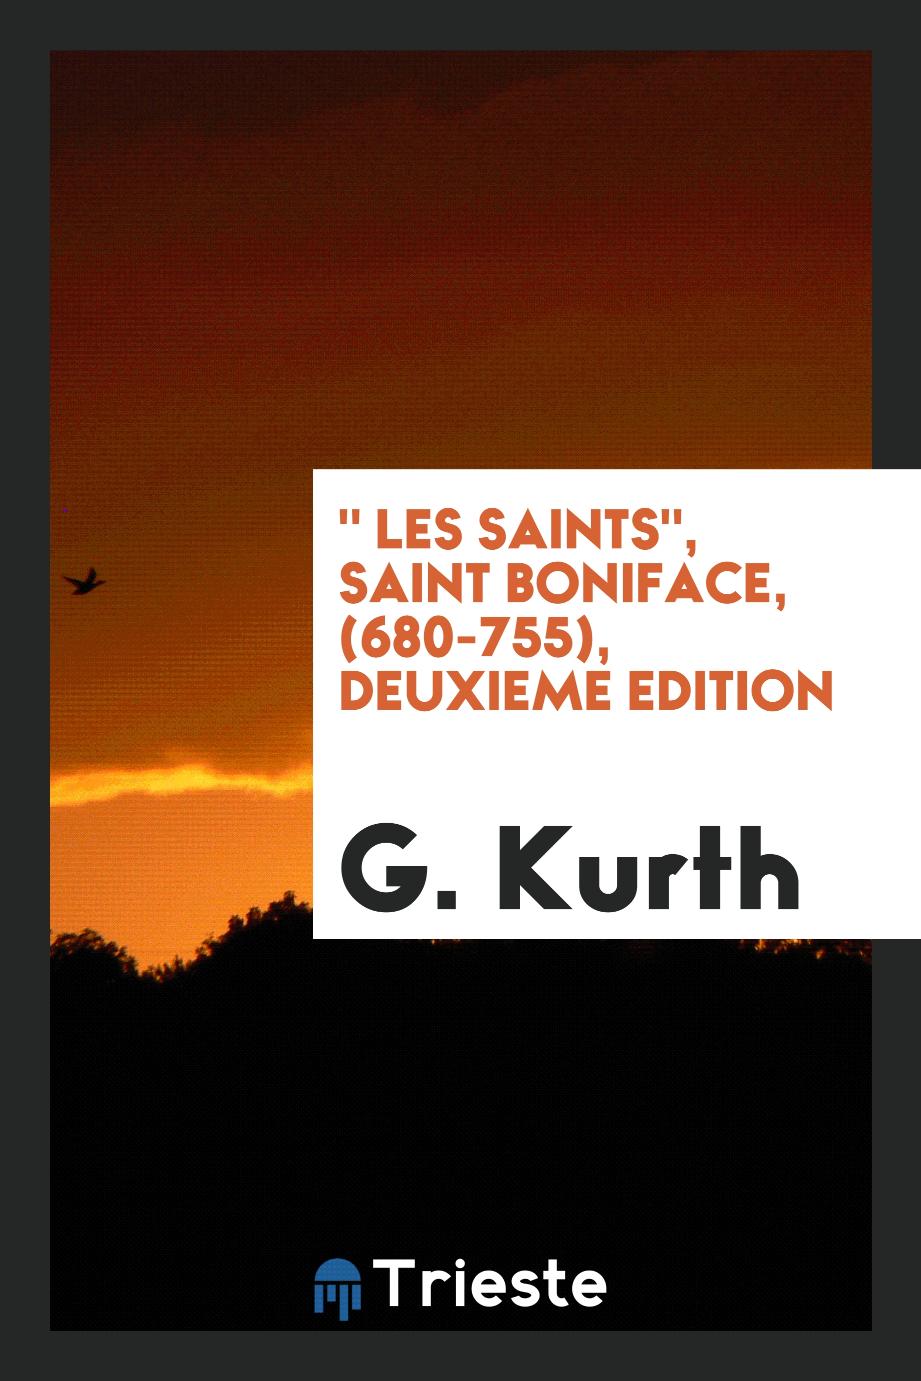 " Les Saints", Saint Boniface, (680-755), deuxieme edition